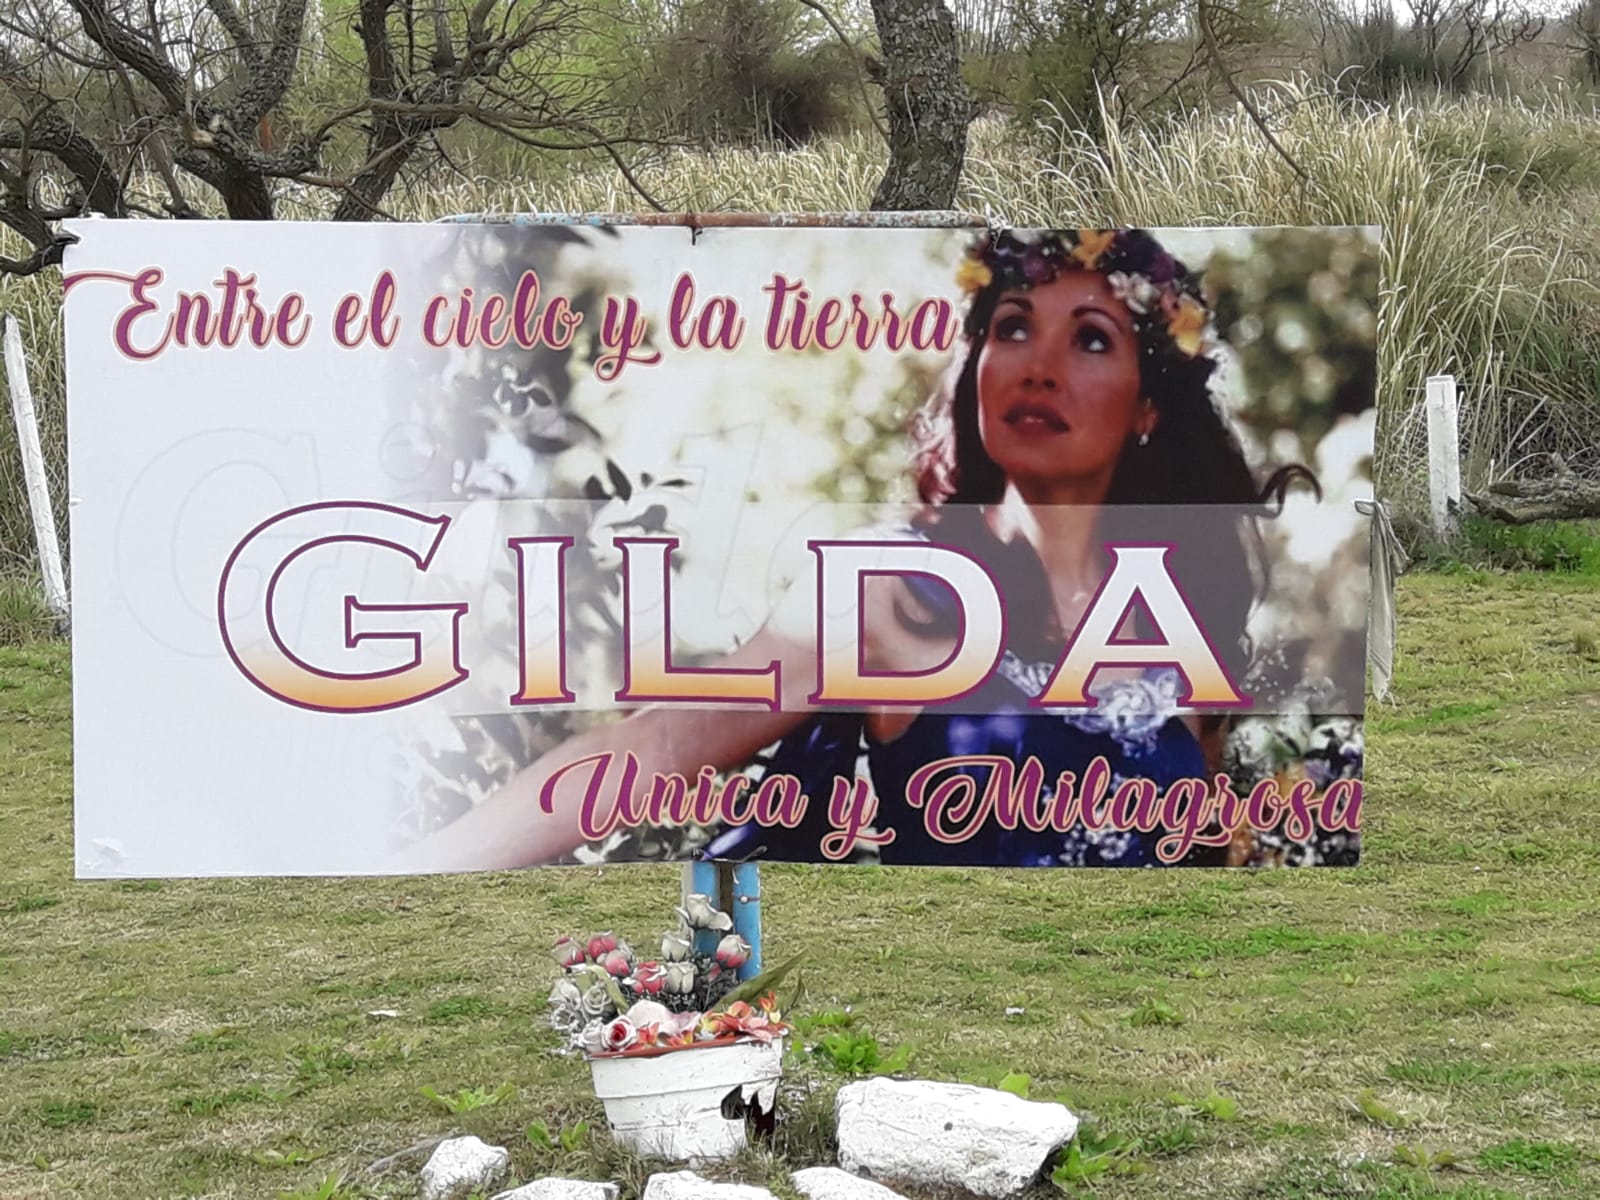 Uno de los cientos de carteles y banderas que en el santuario hablan de los milagros de "Santa Gilda"